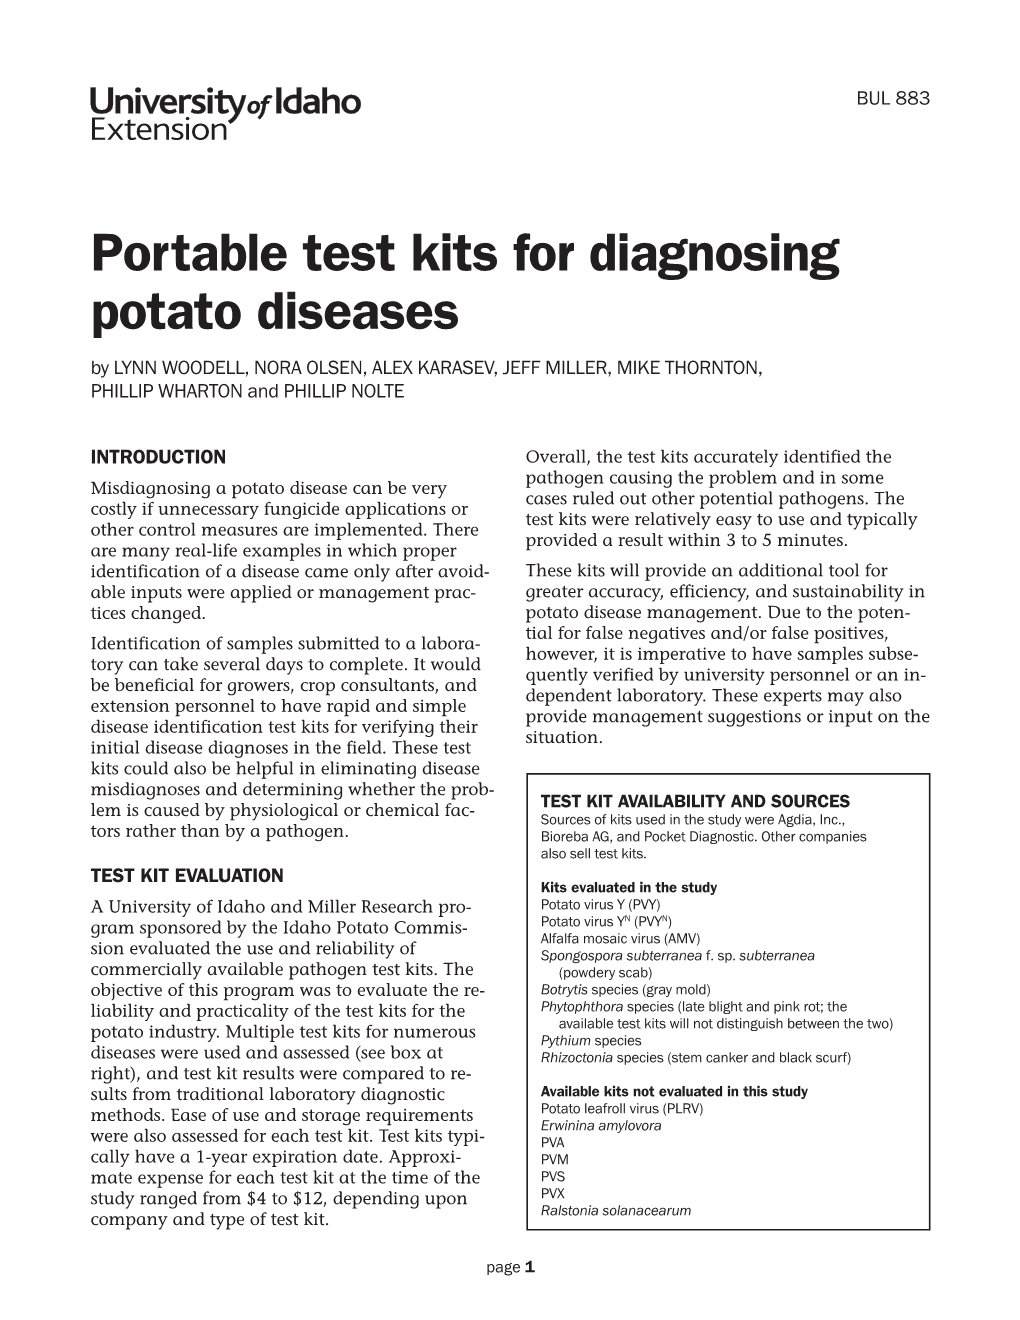 Portable Test Kits for Diagnosing Potato Diseases